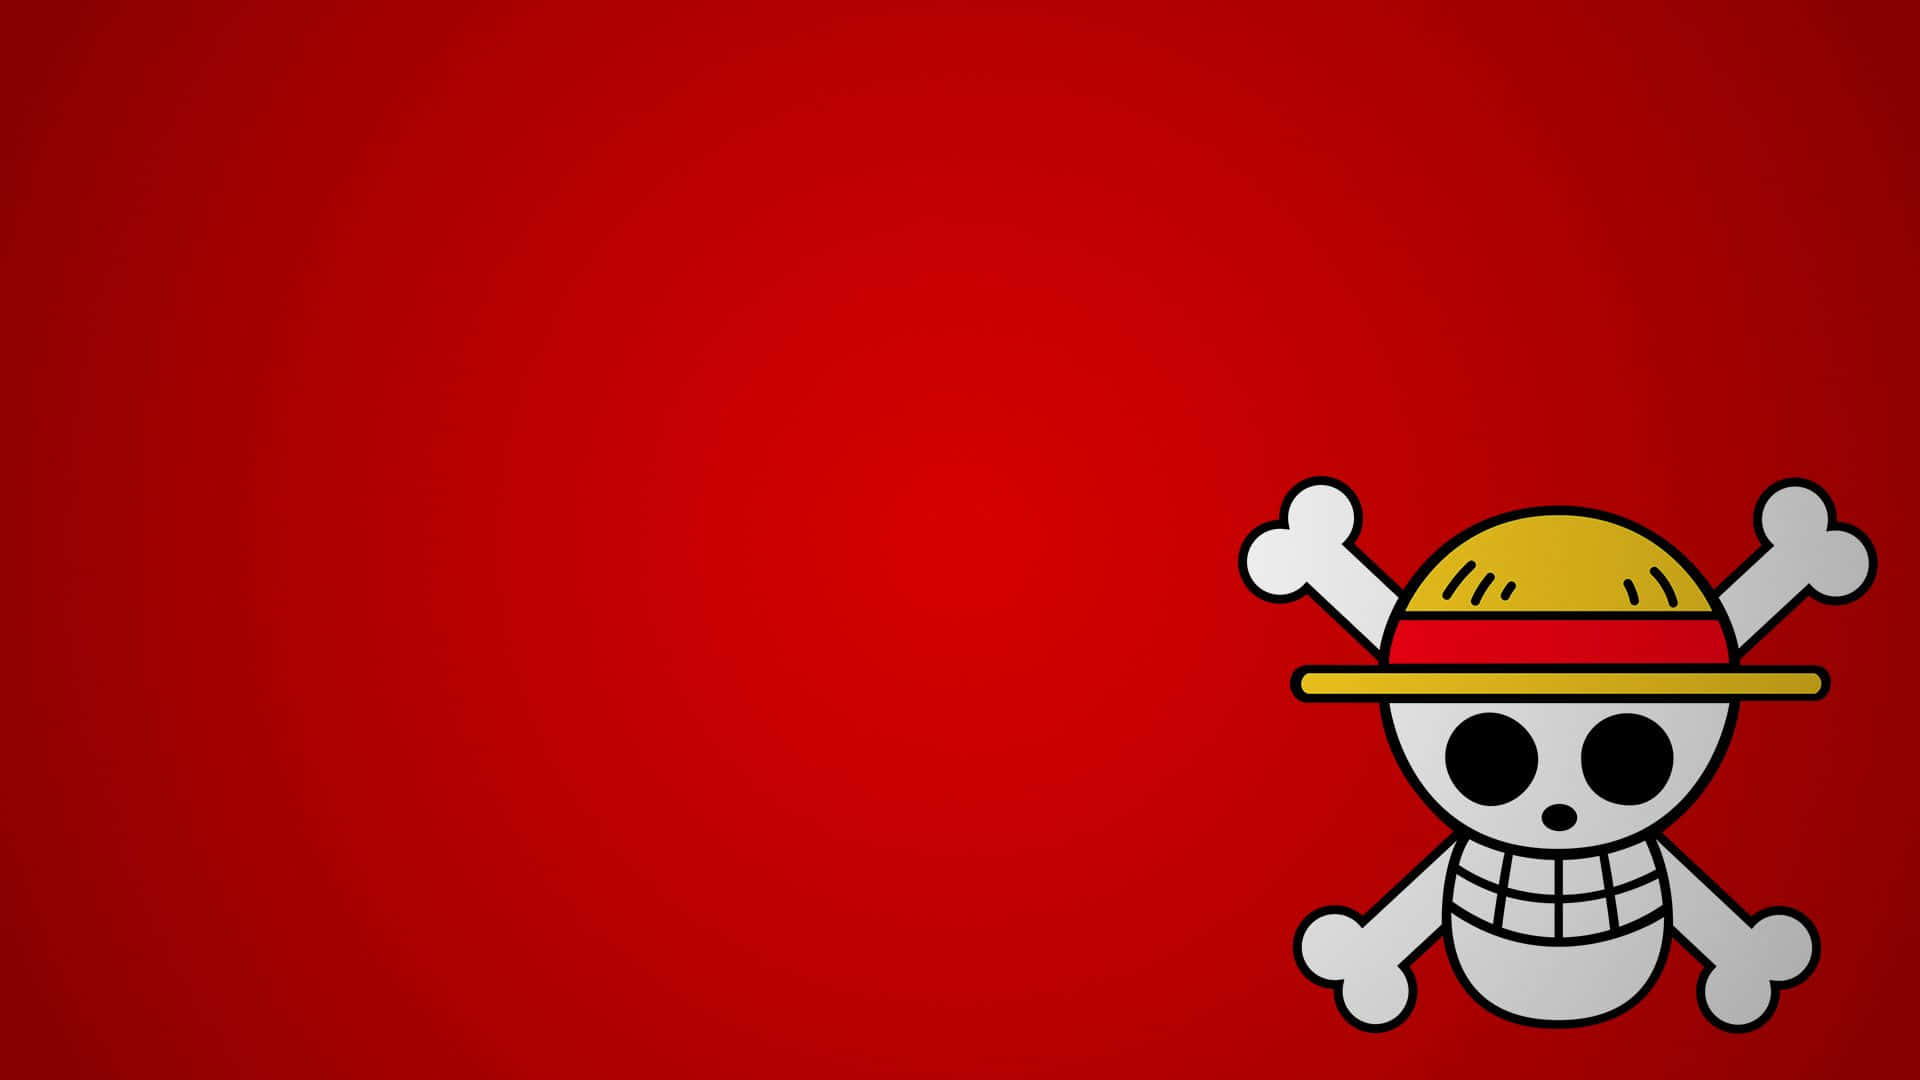 Logotipominimalista De La Calavera De La Banda De Sombreros De Paja De One Piece Fondo de pantalla